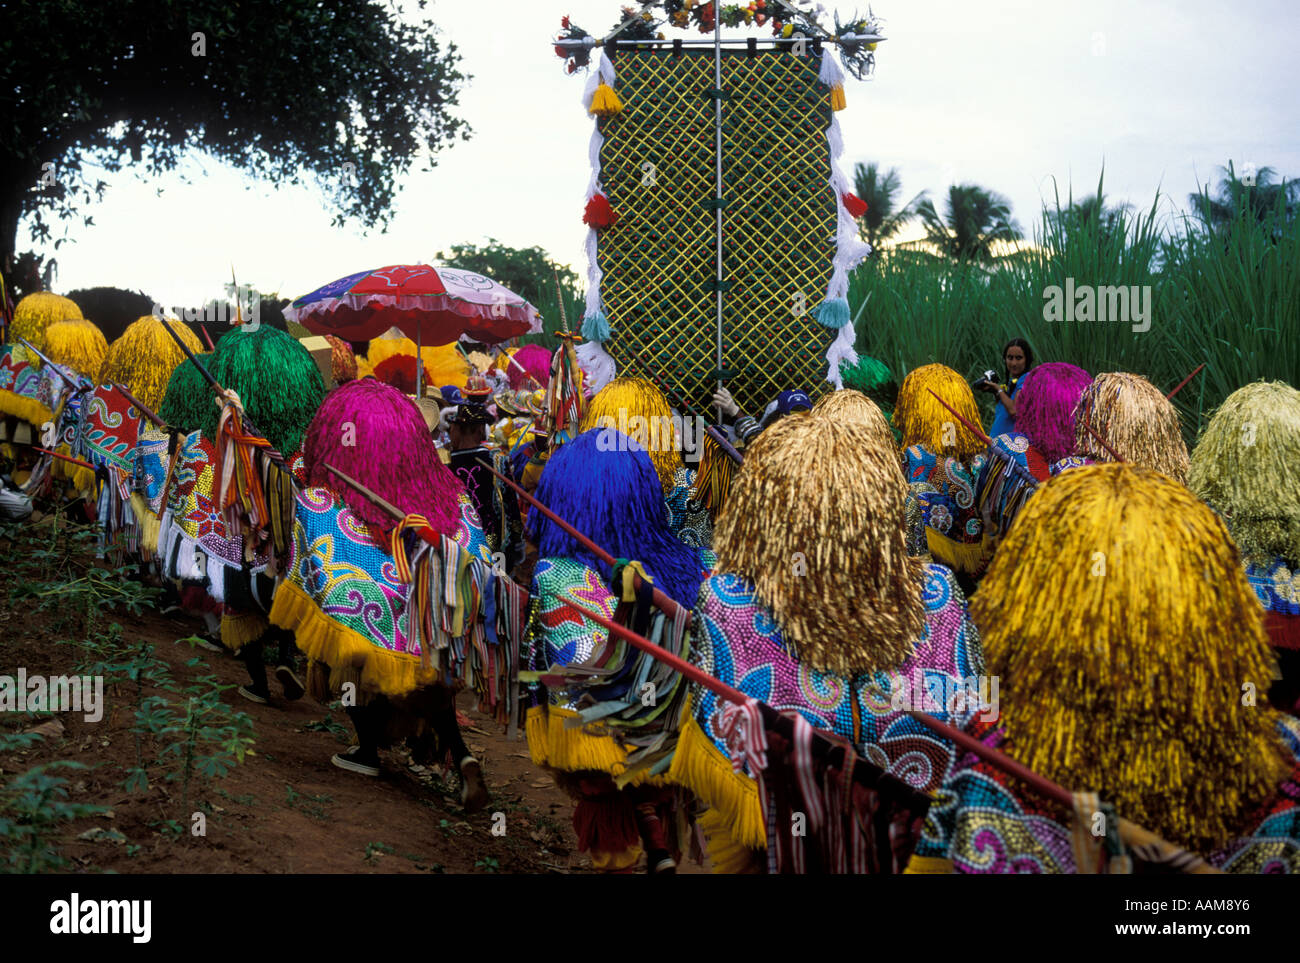 Maracatu Rural groupe de personnes dansant au carnaval au son d'un groupe de percussion Brésil Banque D'Images